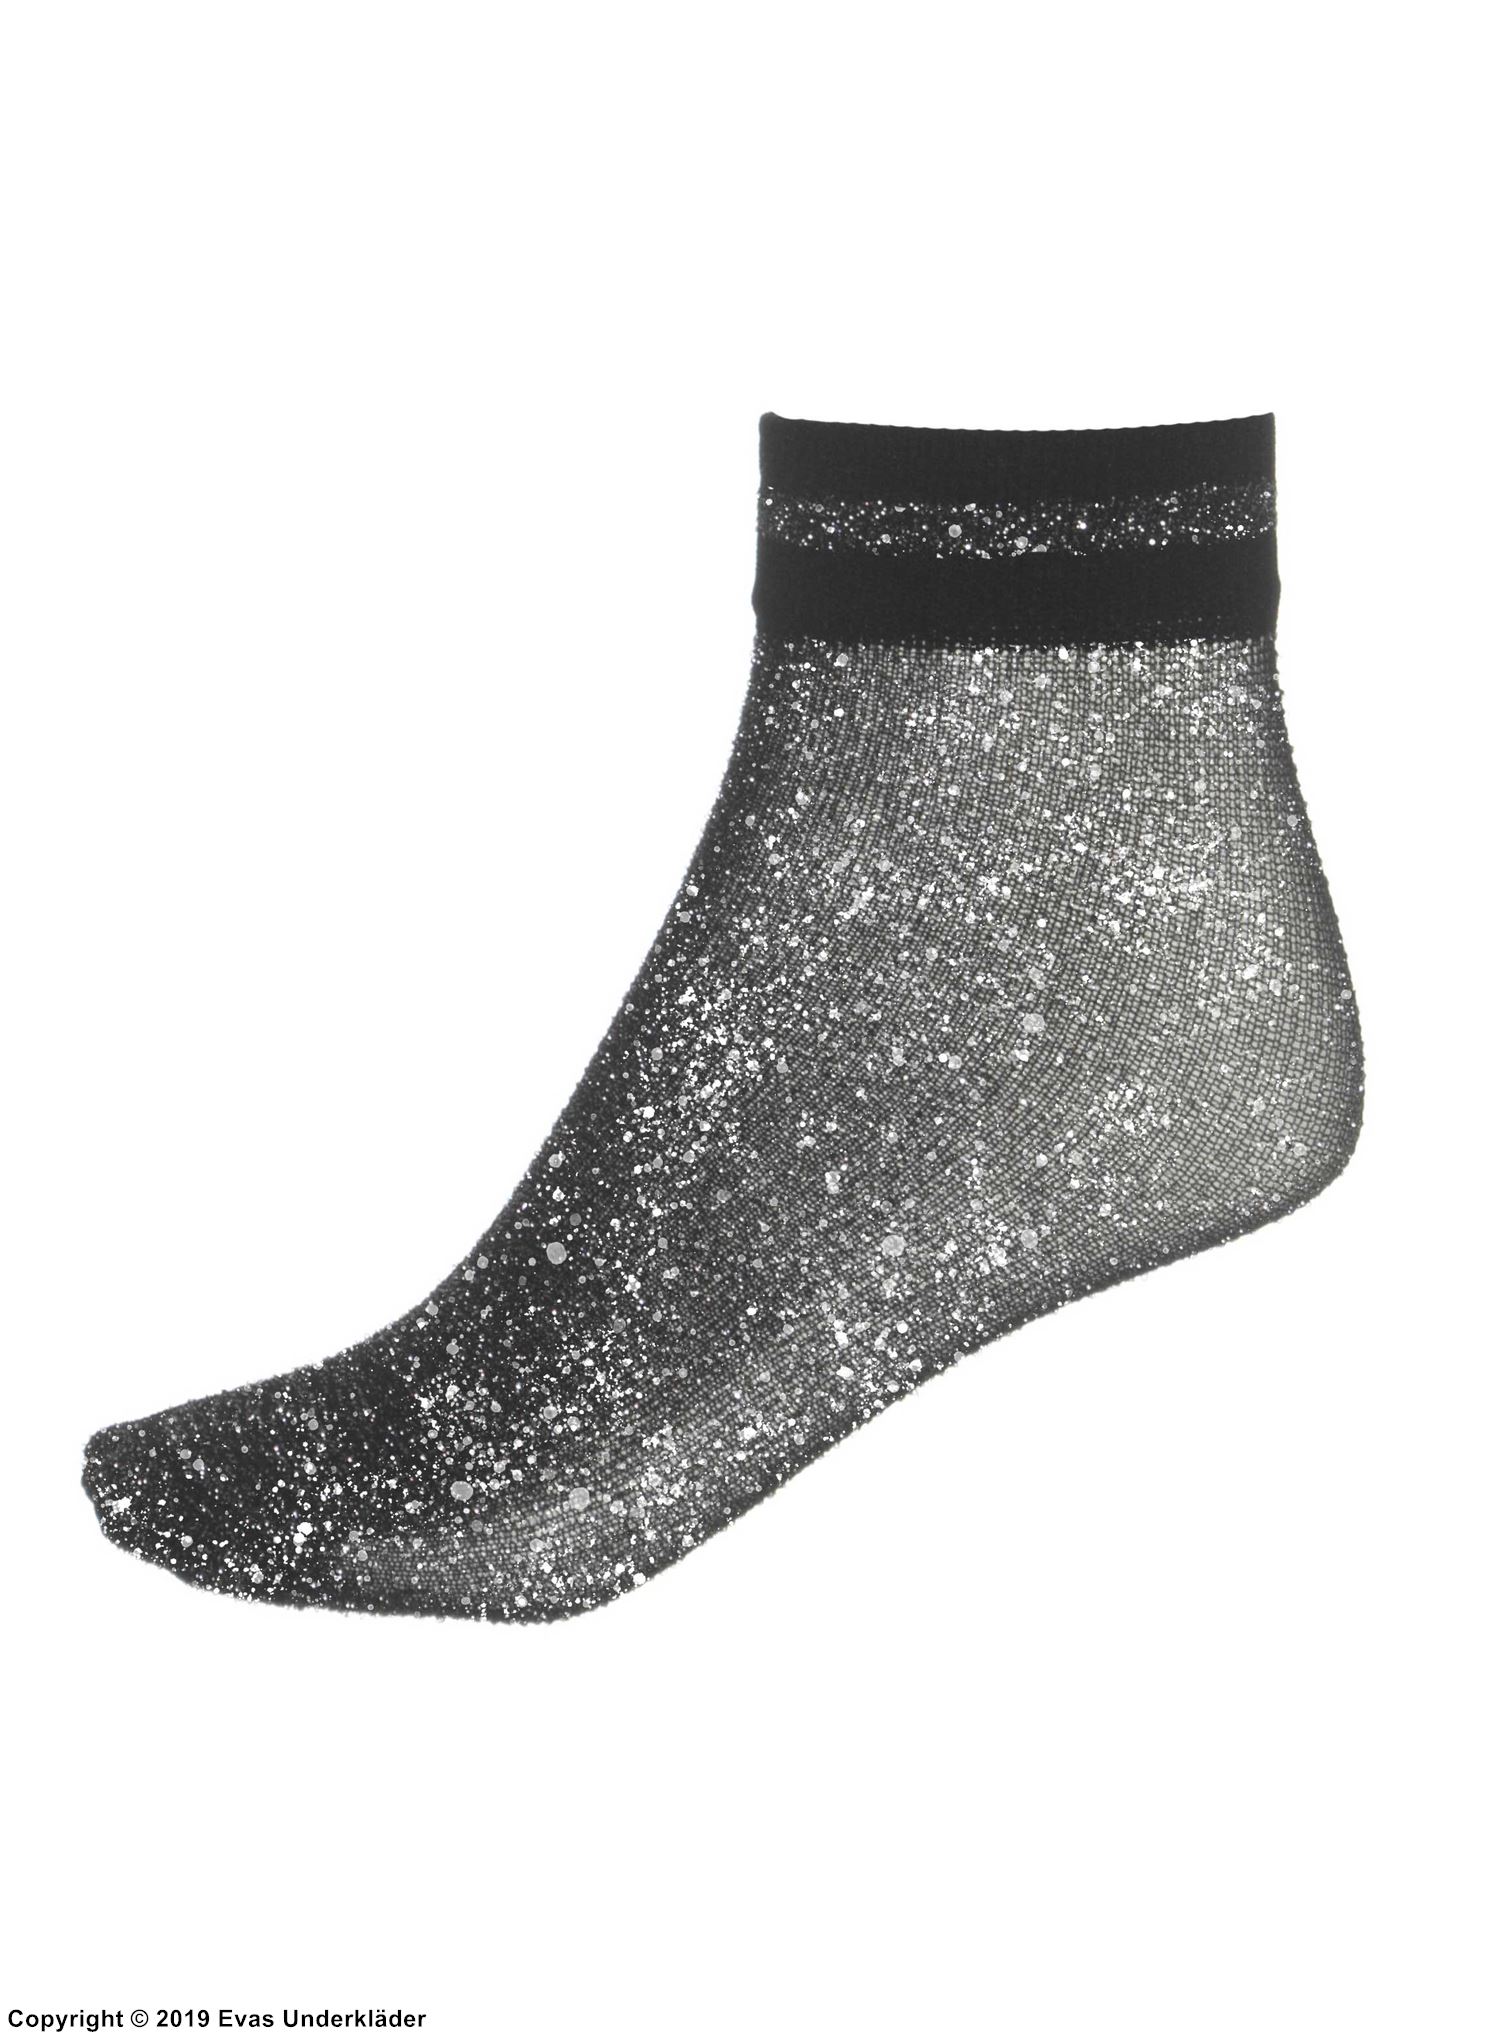 Ankle socks, mesh, glitter, horizontal stripes